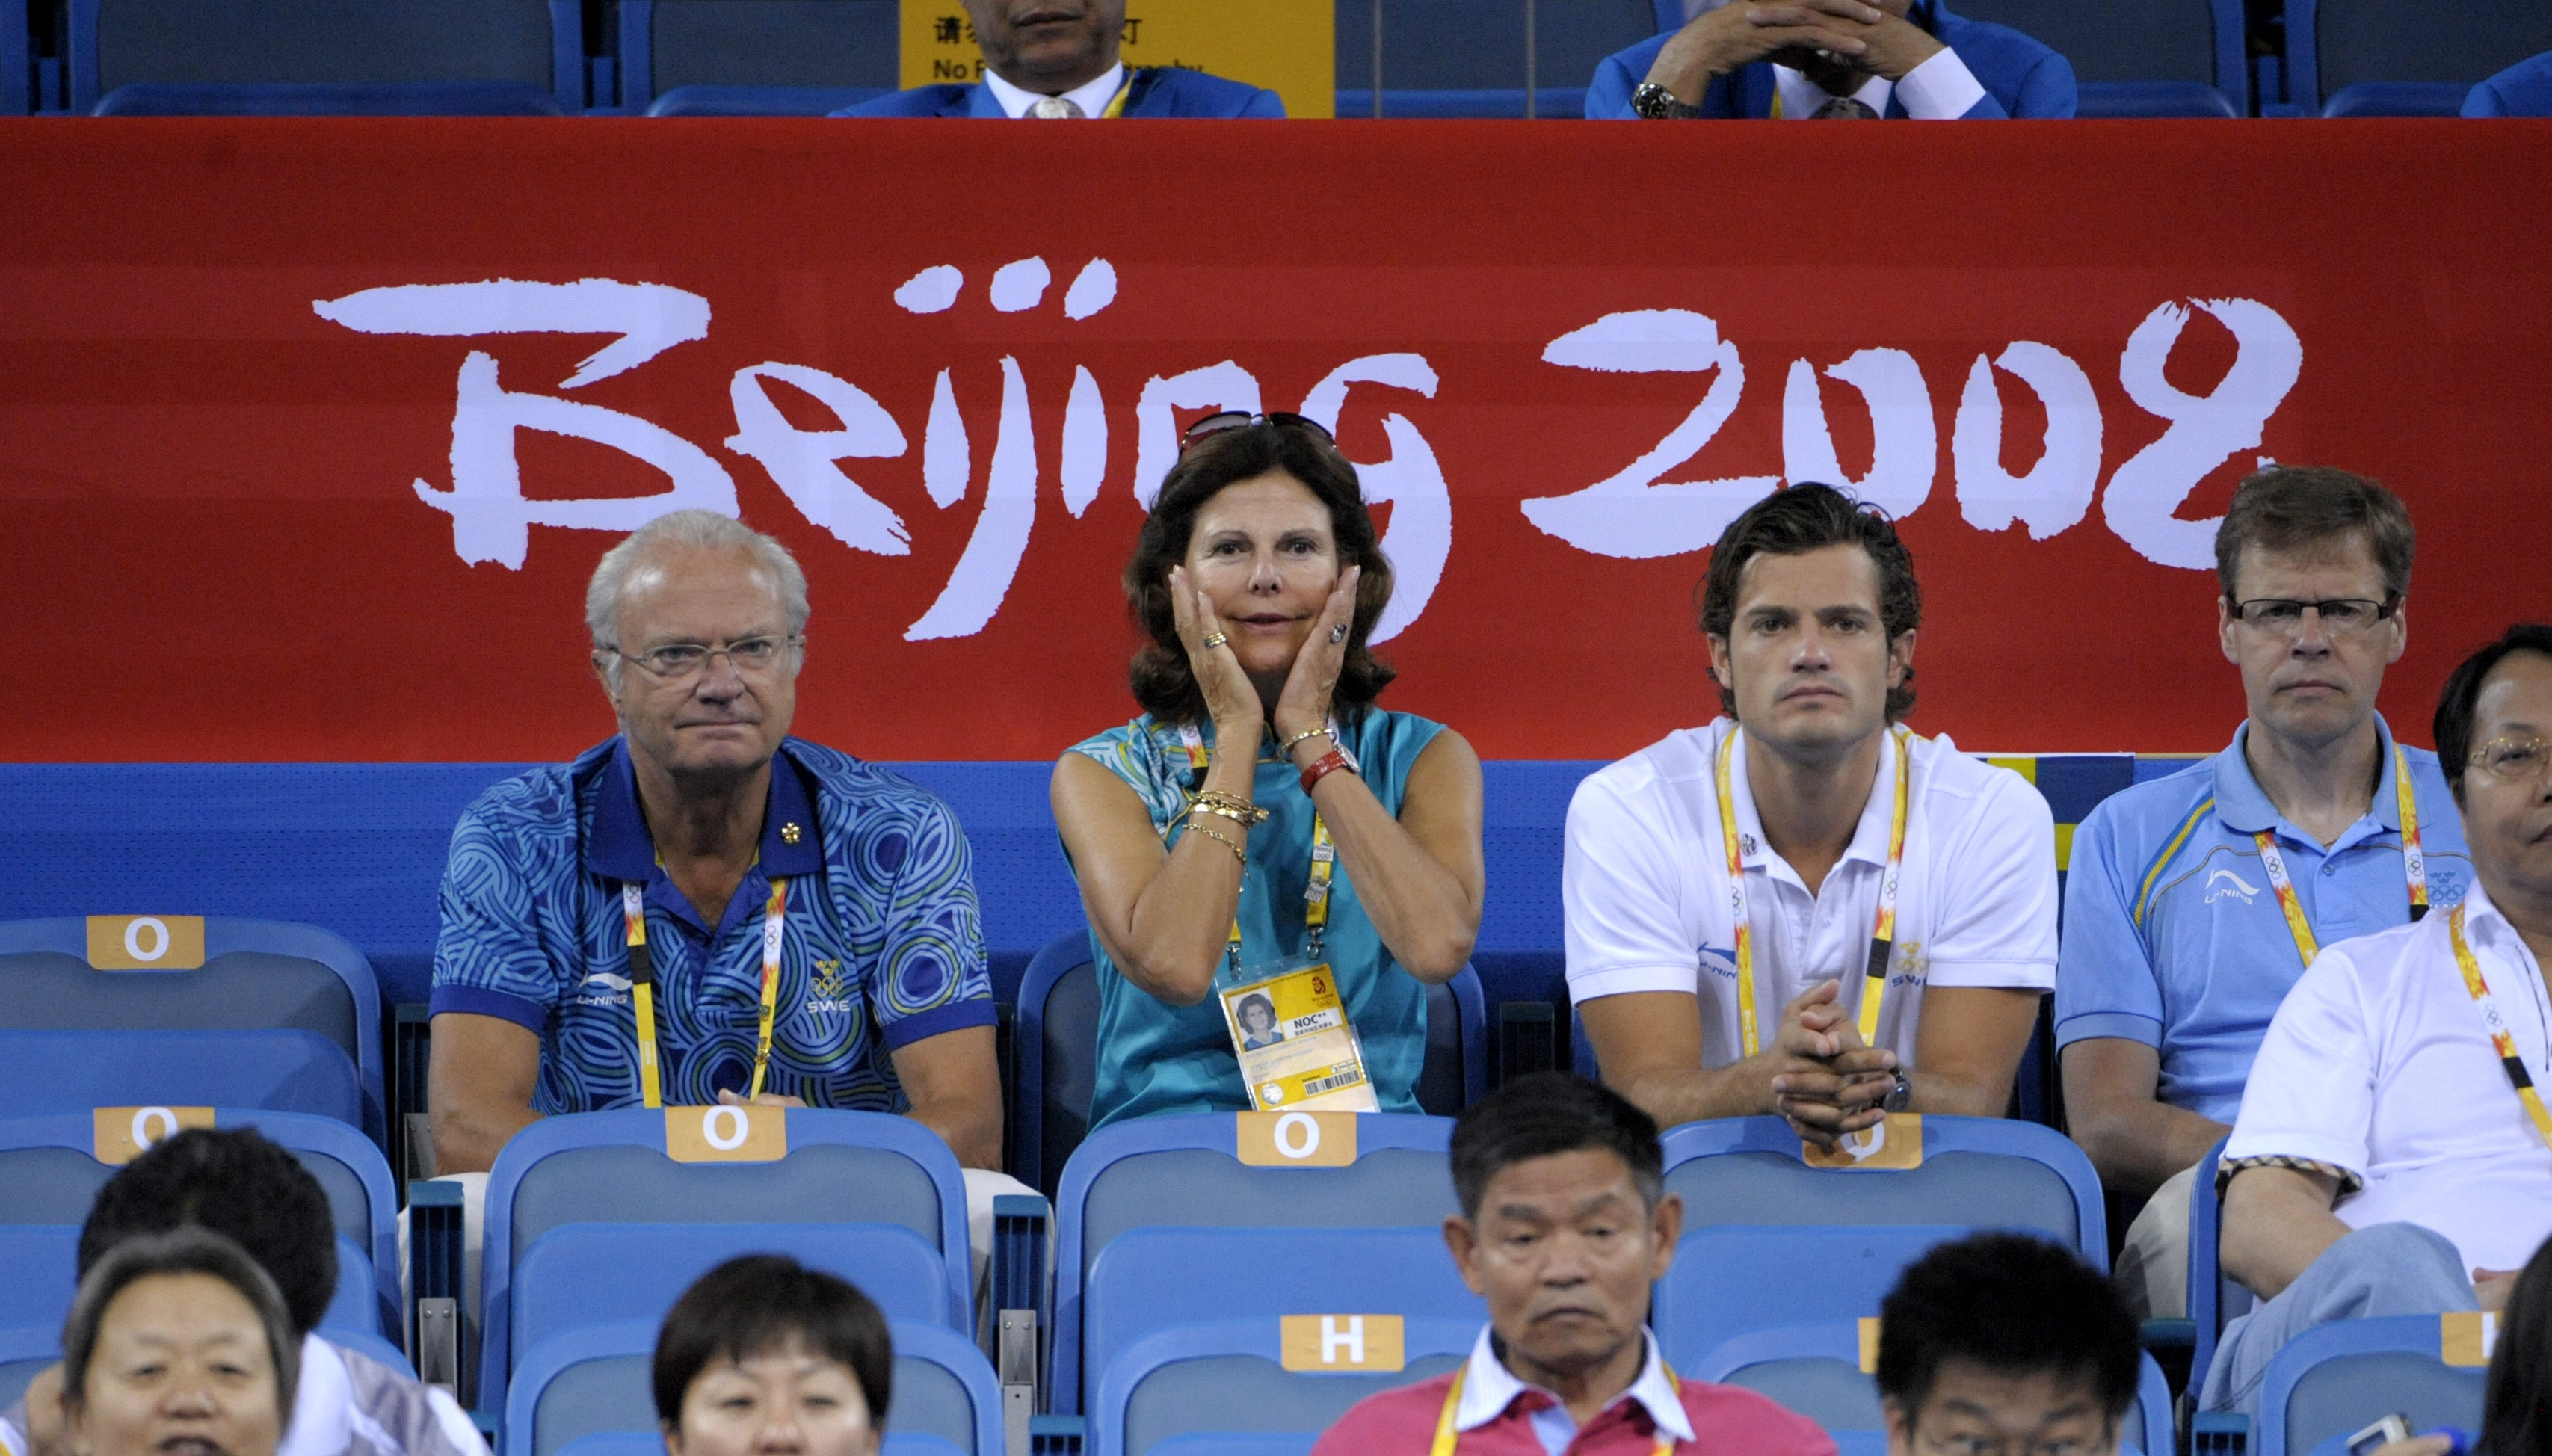 OS i Kina 2008 möttes av stark kritik - och trots lovade förbättringar hände inget.